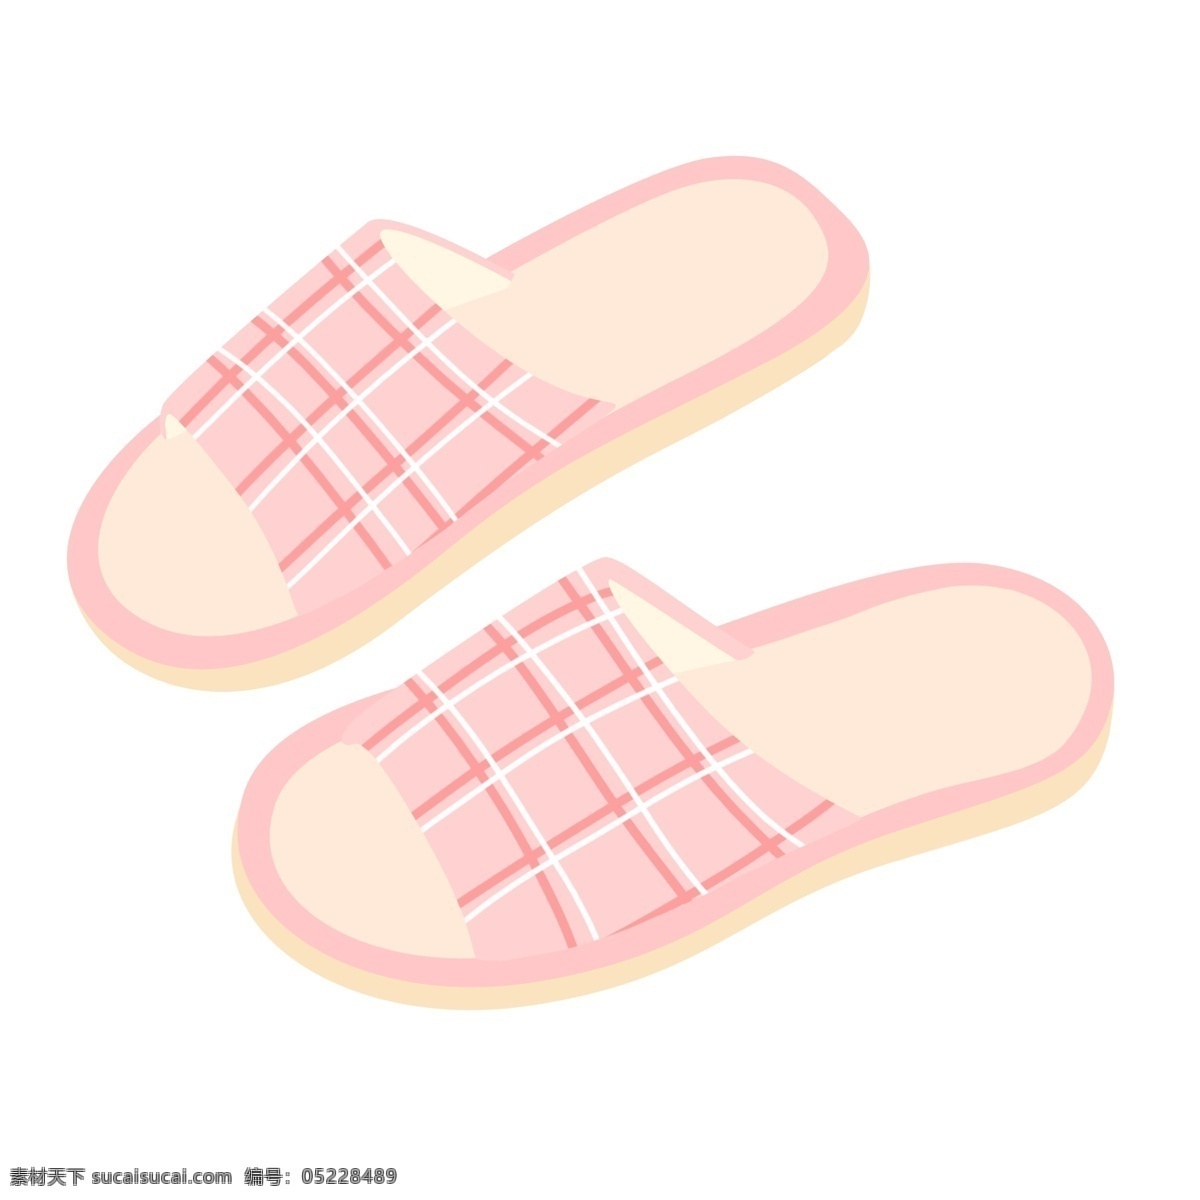 粉色格子拖鞋 拖鞋 生活用品 鞋子